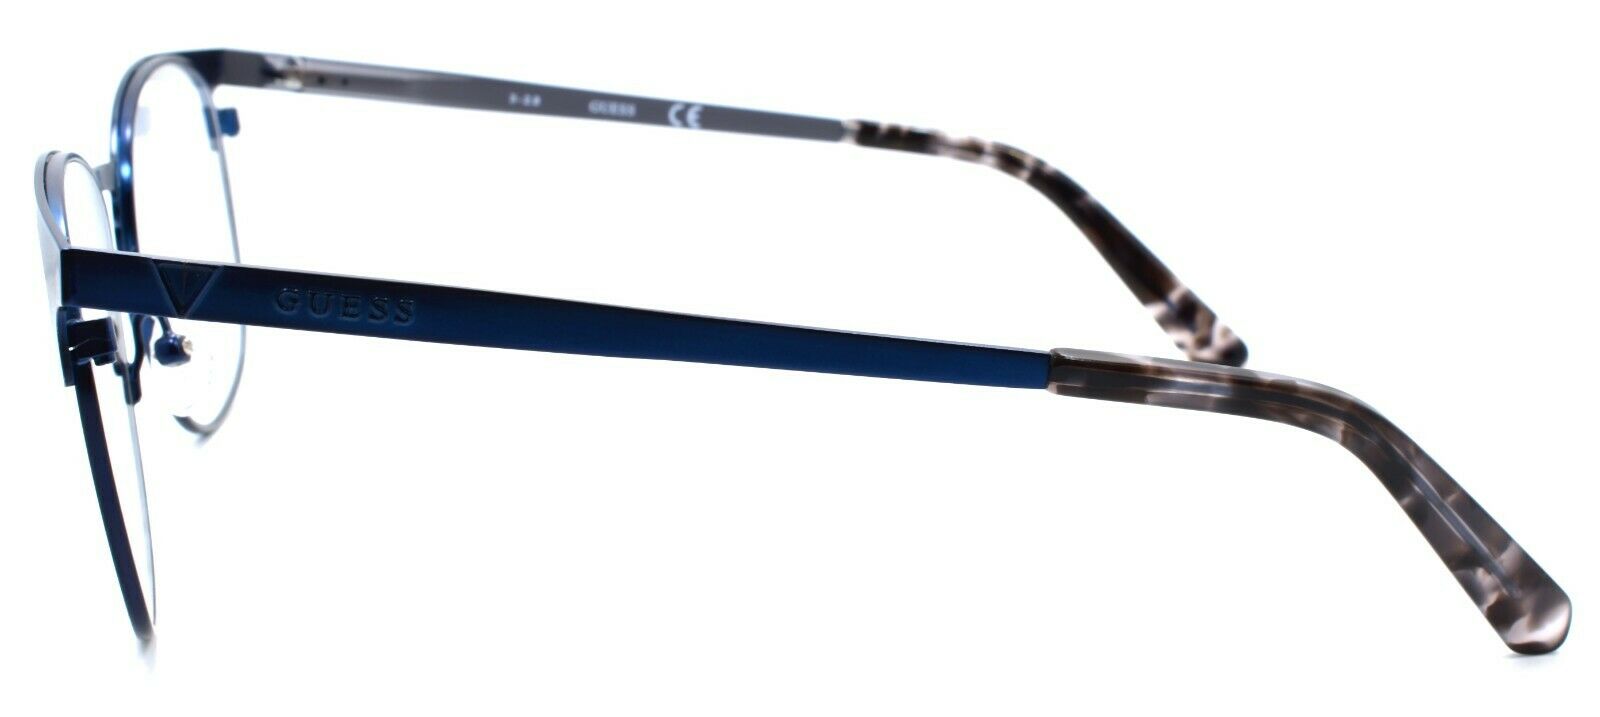 3-GUESS GU1976 091 Men's Eyeglasses Frames 53-18-145 Matte Blue-889214043405-IKSpecs